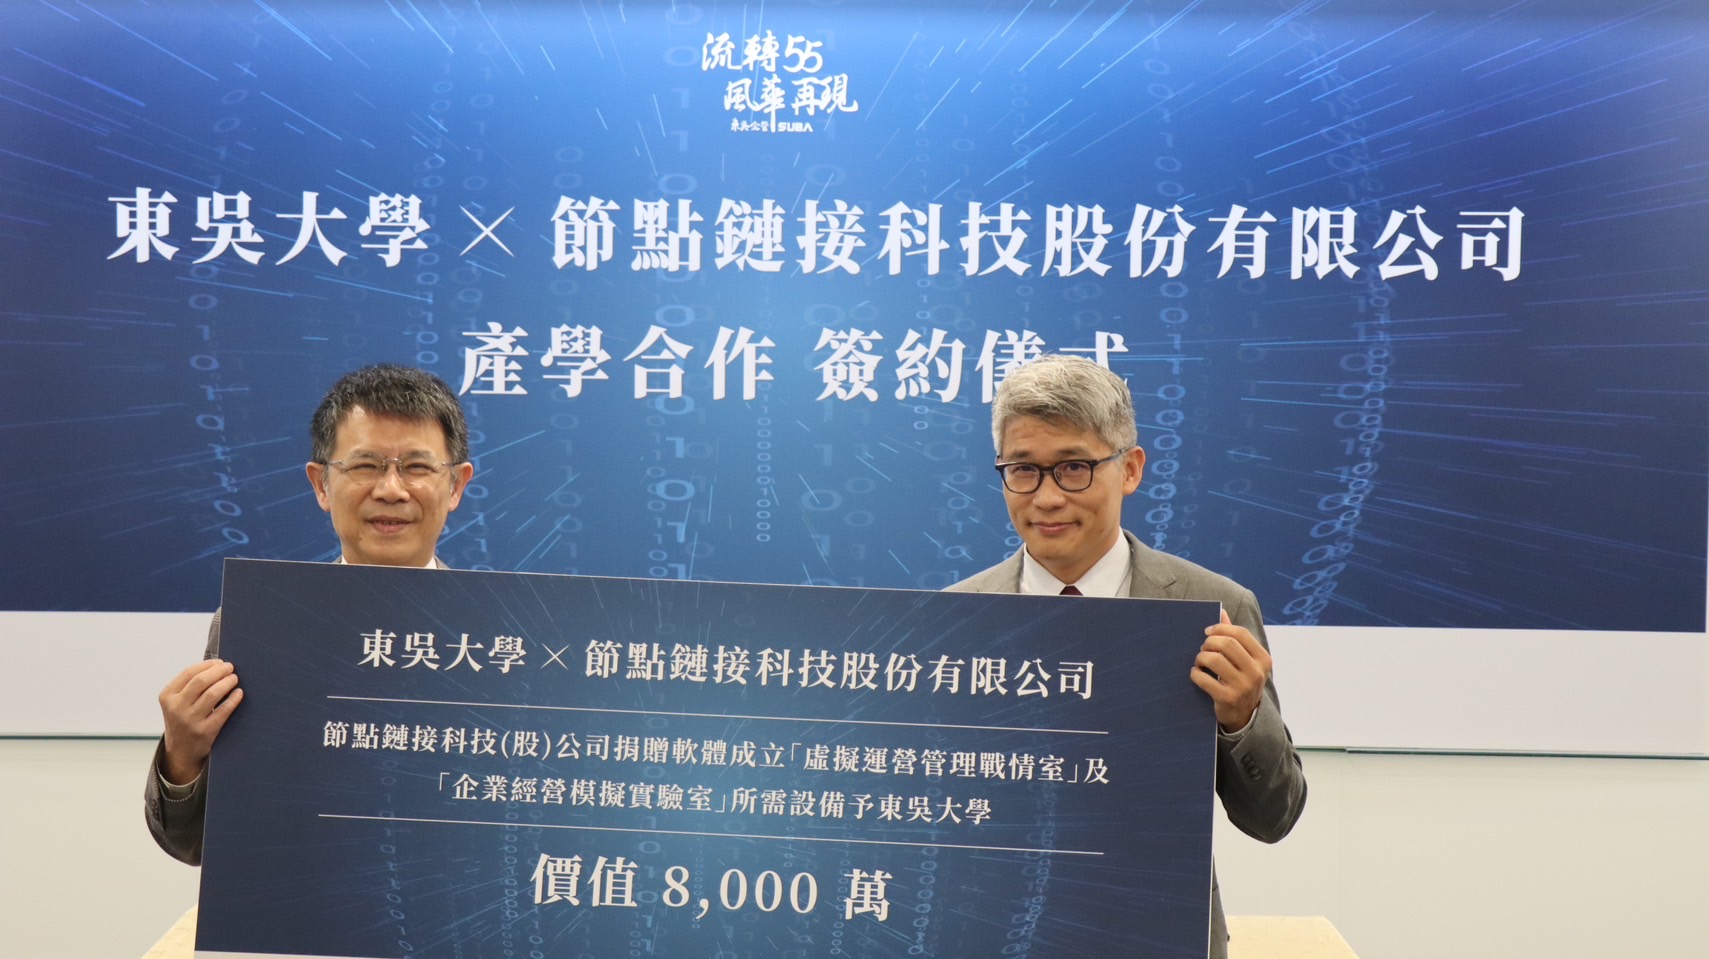 節點鏈接科技捐贈東吳大學客製化軟體900套及企業經營模擬實驗室，由節點鏈接科技李韋宏董事長(右)代表致贈；本校潘維大校長(左)代表受贈。